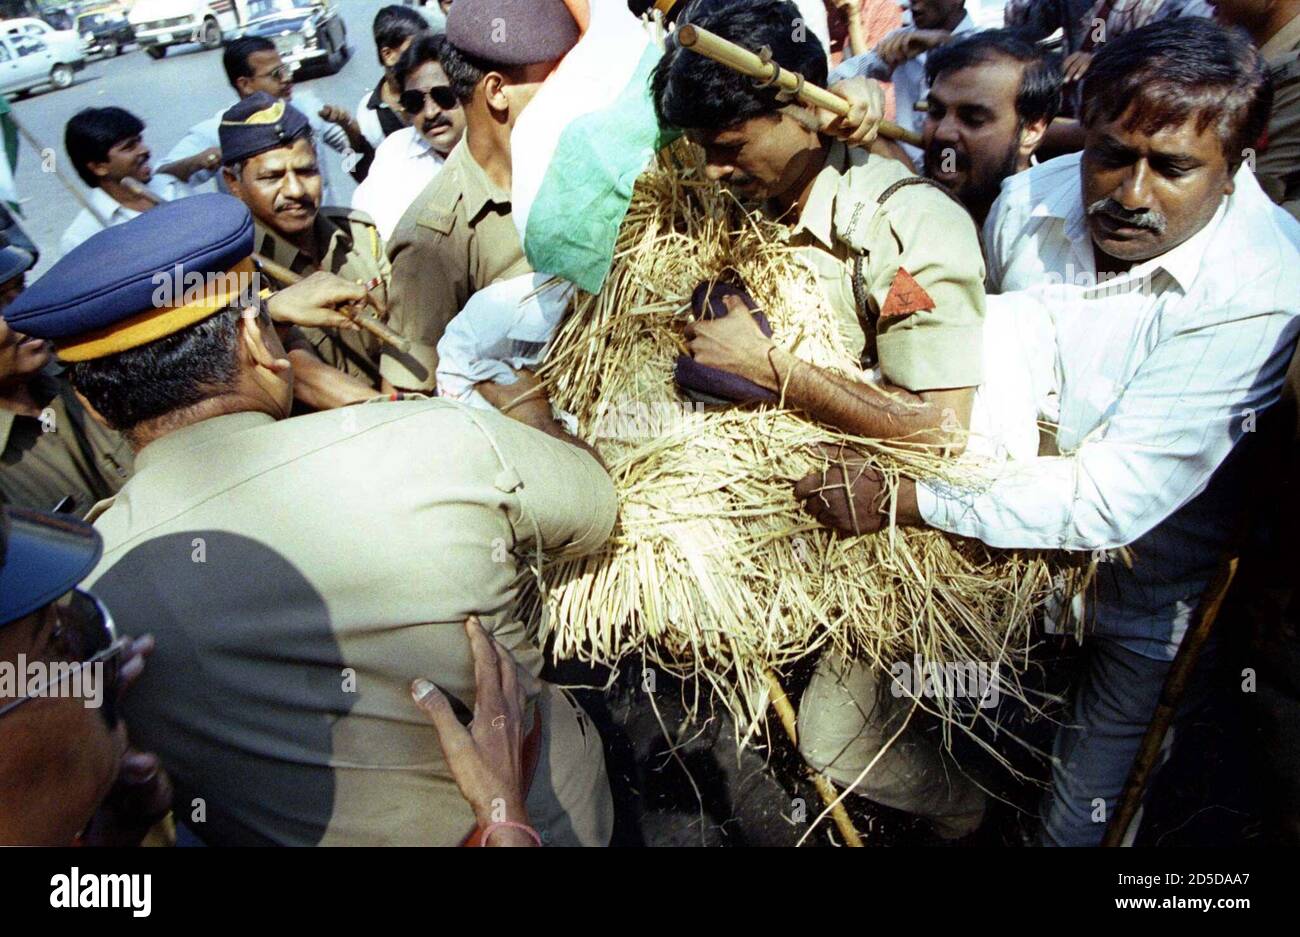 Gli attivisti del Partito del Congresso di Bombay sono fermati dalla polizia dal bruciare un effigie di K. Karunanidhi, leader del partito sudindiano Dravida Munnetra Kazhagam (DMK) novembre 25. Il Congresso accusa la DMK di essere legata all'omicidio dell'ex Premier Rajiv Gandhi. POLITICA INDIANA Foto Stock